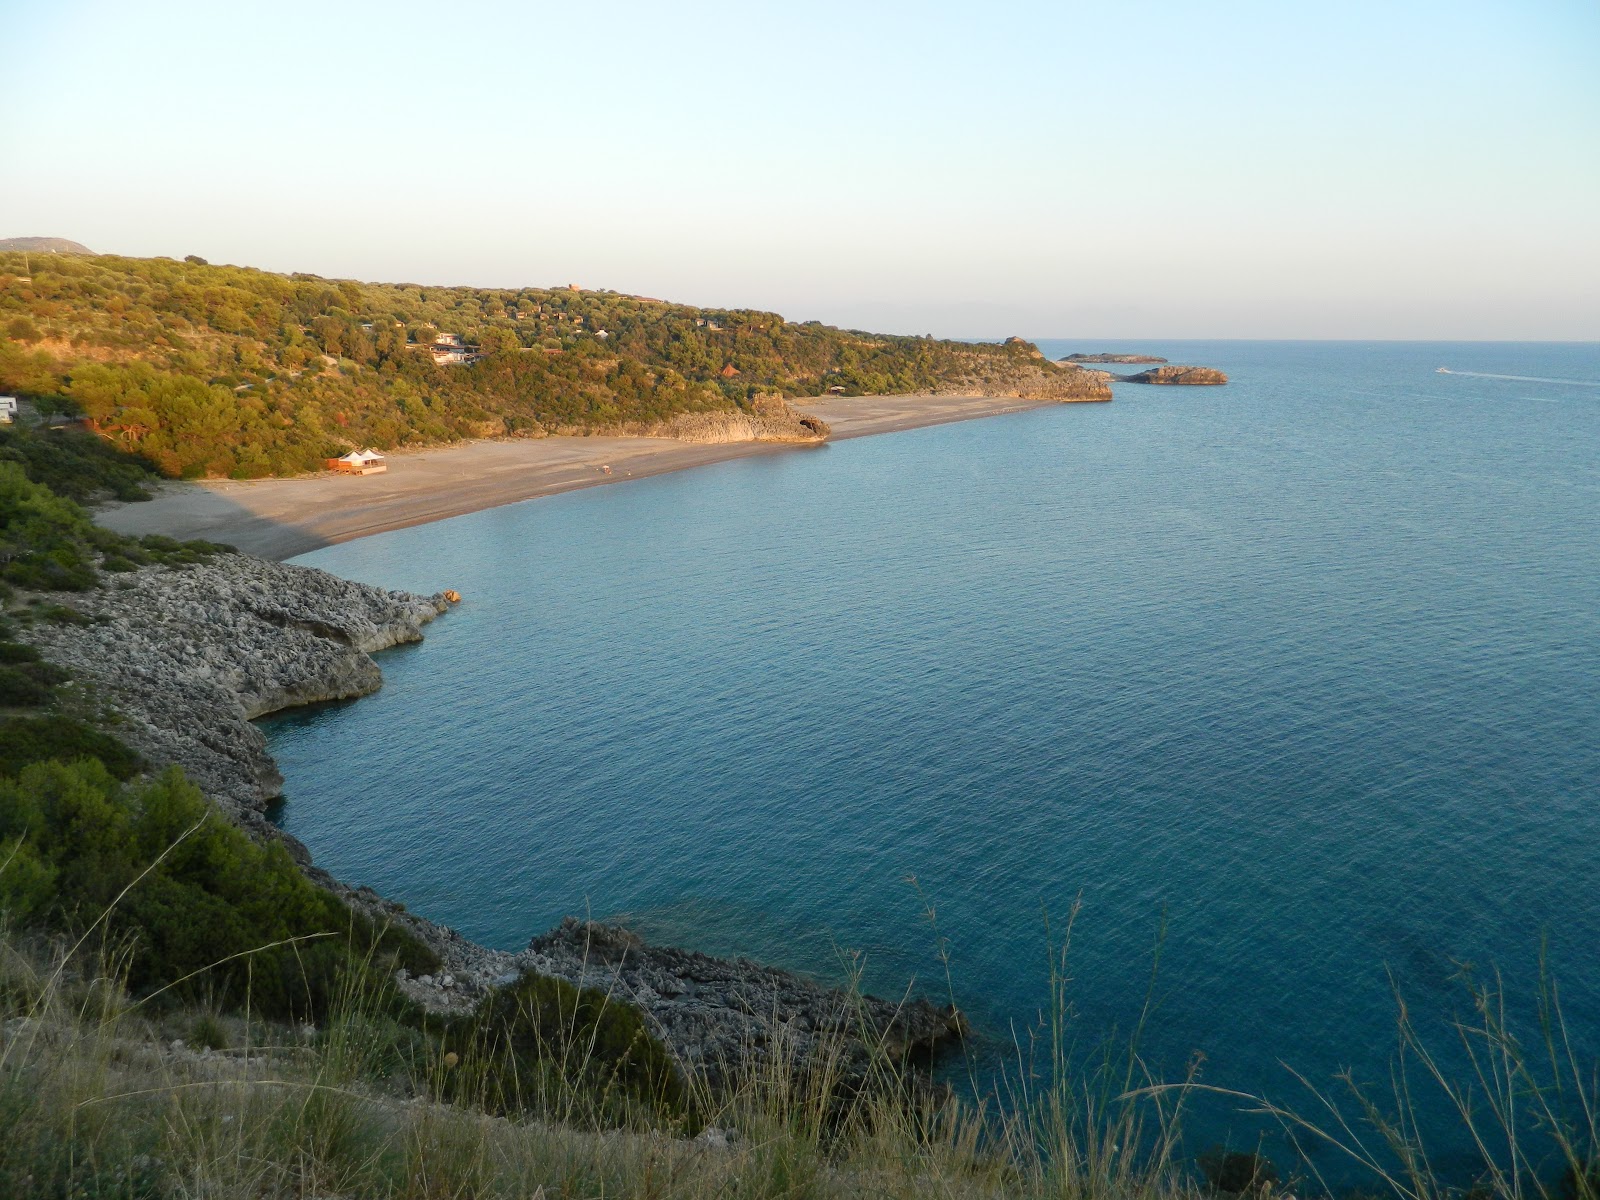 Fotografija Spiaggia di Capogrosso II nahaja se v naravnem okolju